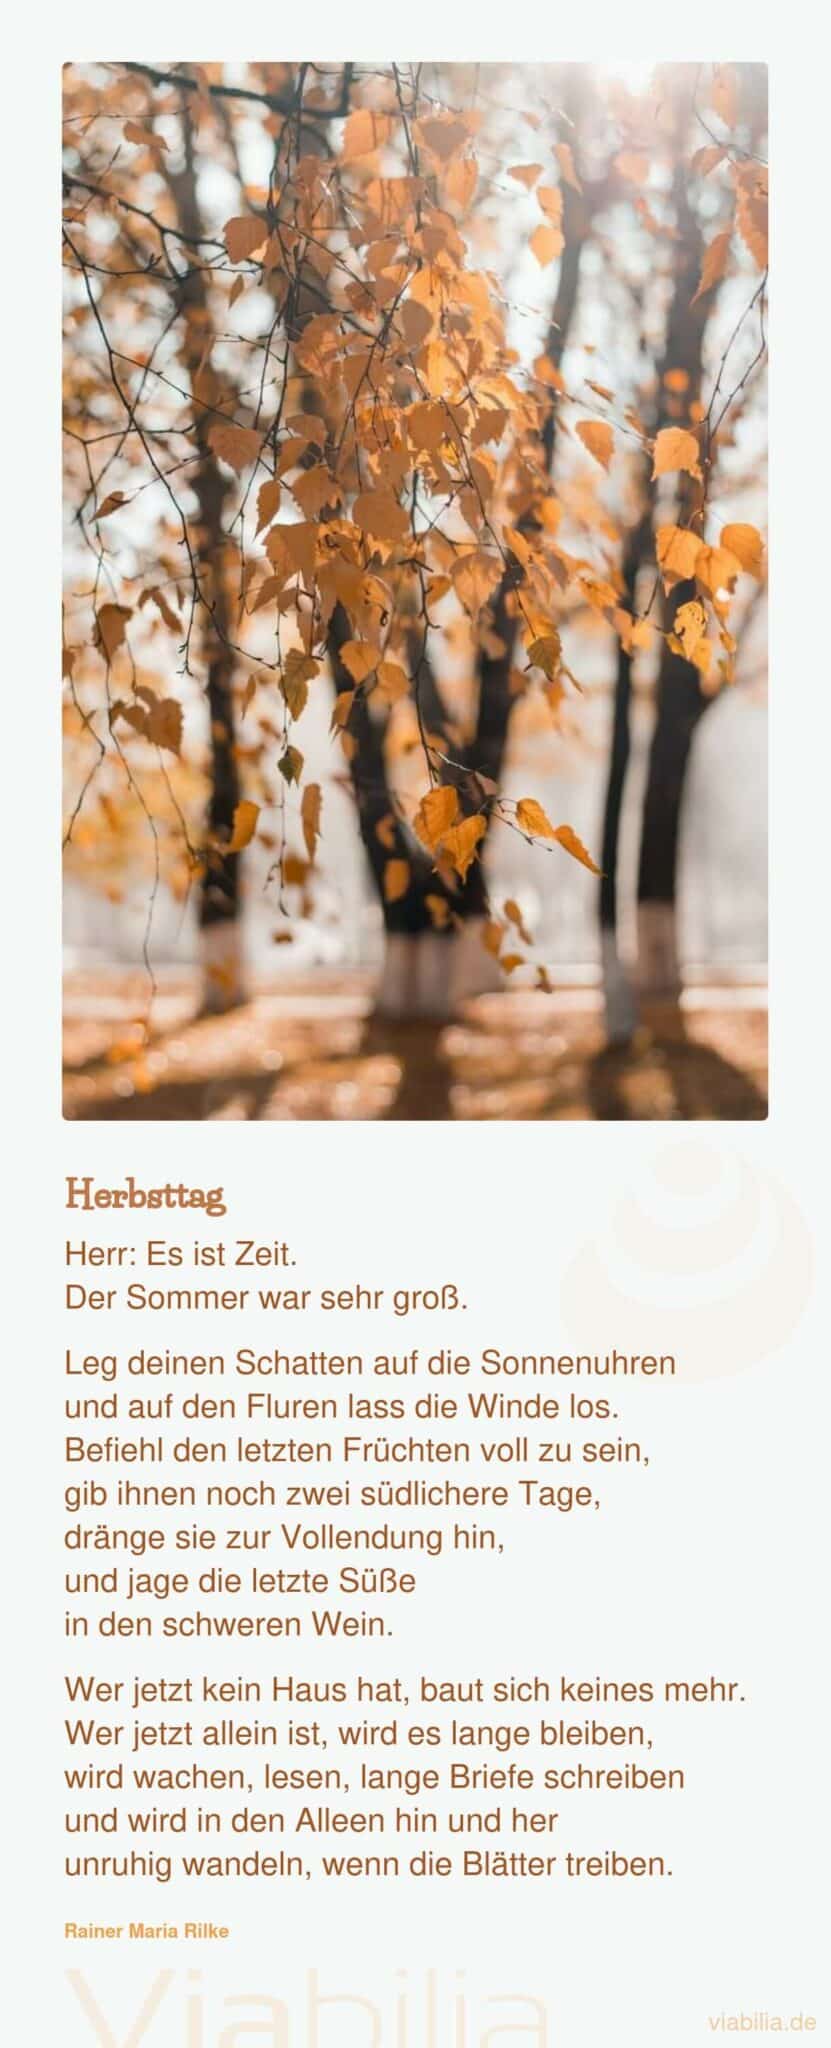 Herbstgedicht von Rilke